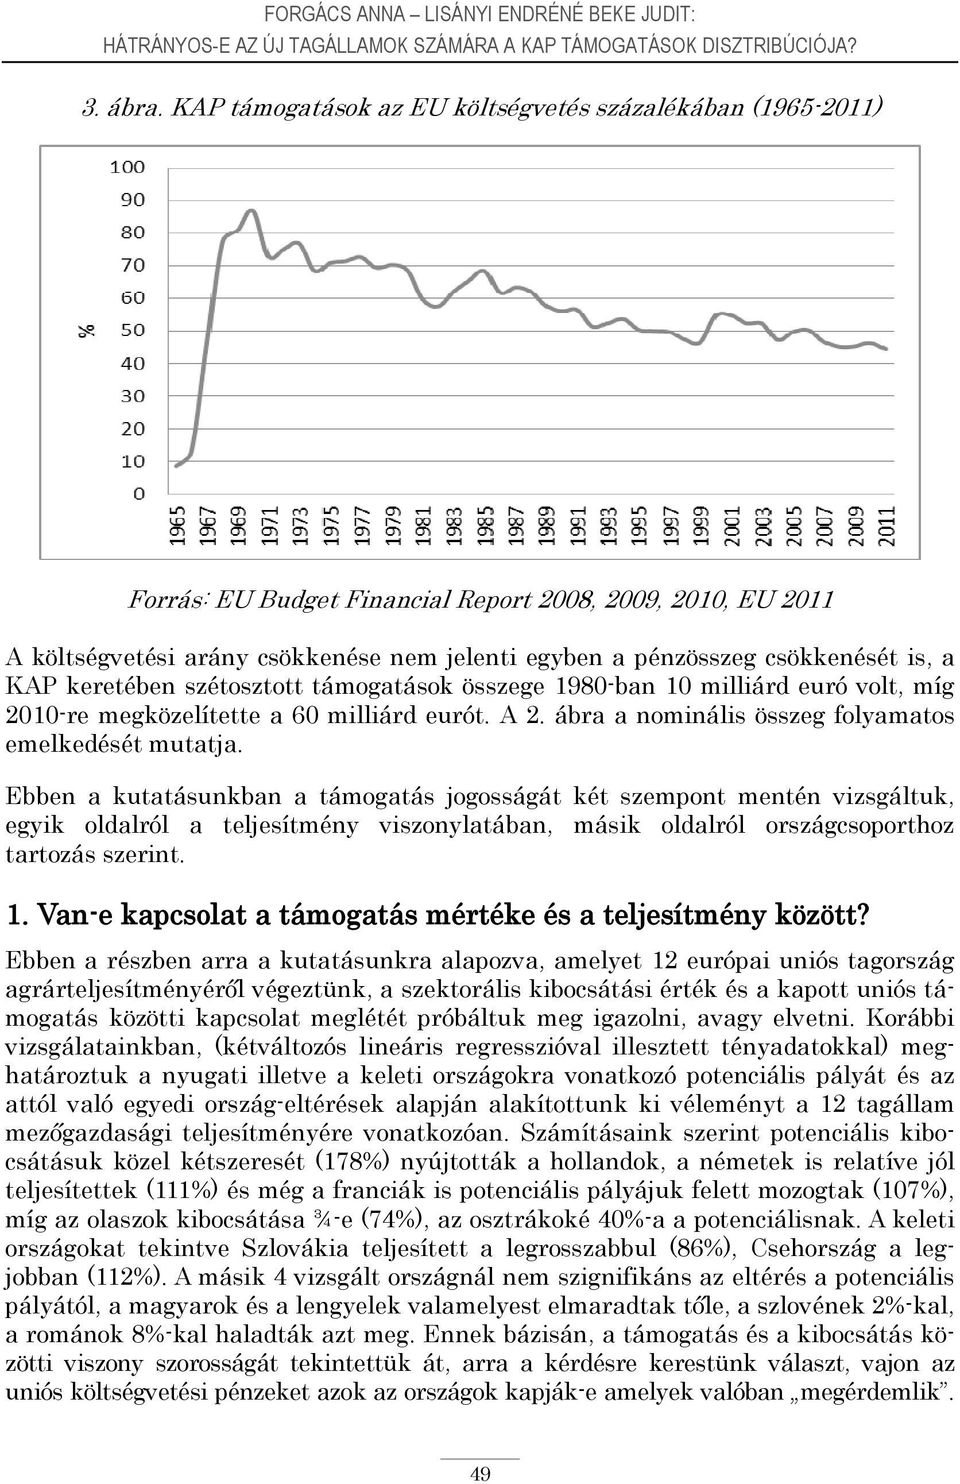 is, a KAP keretében szétosztott támogatások összege 1980-ban 10 milliárd euró volt, míg 2010-re megközelítette a 60 milliárd eurót. A 2. ábra a nominális összeg folyamatos emelkedését mutatja.